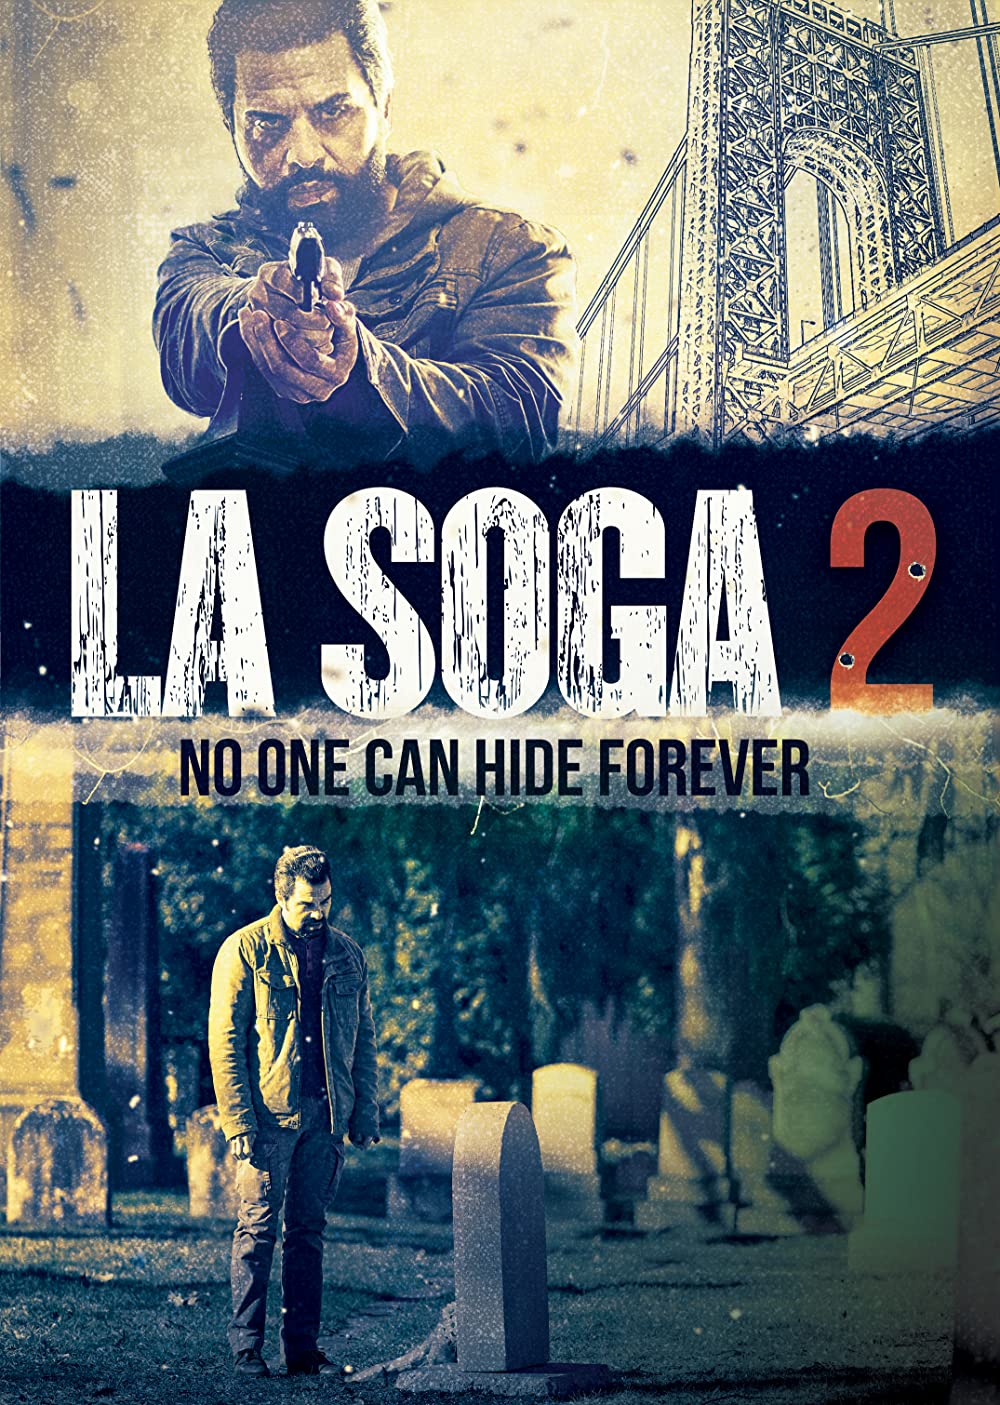 MS Cinema News: Sale tráiler de La Soga 2 secuela del hit de 2010  nuevamente estelarizada por Manny Pérez quien debuta como director además  de escribirla y producirla